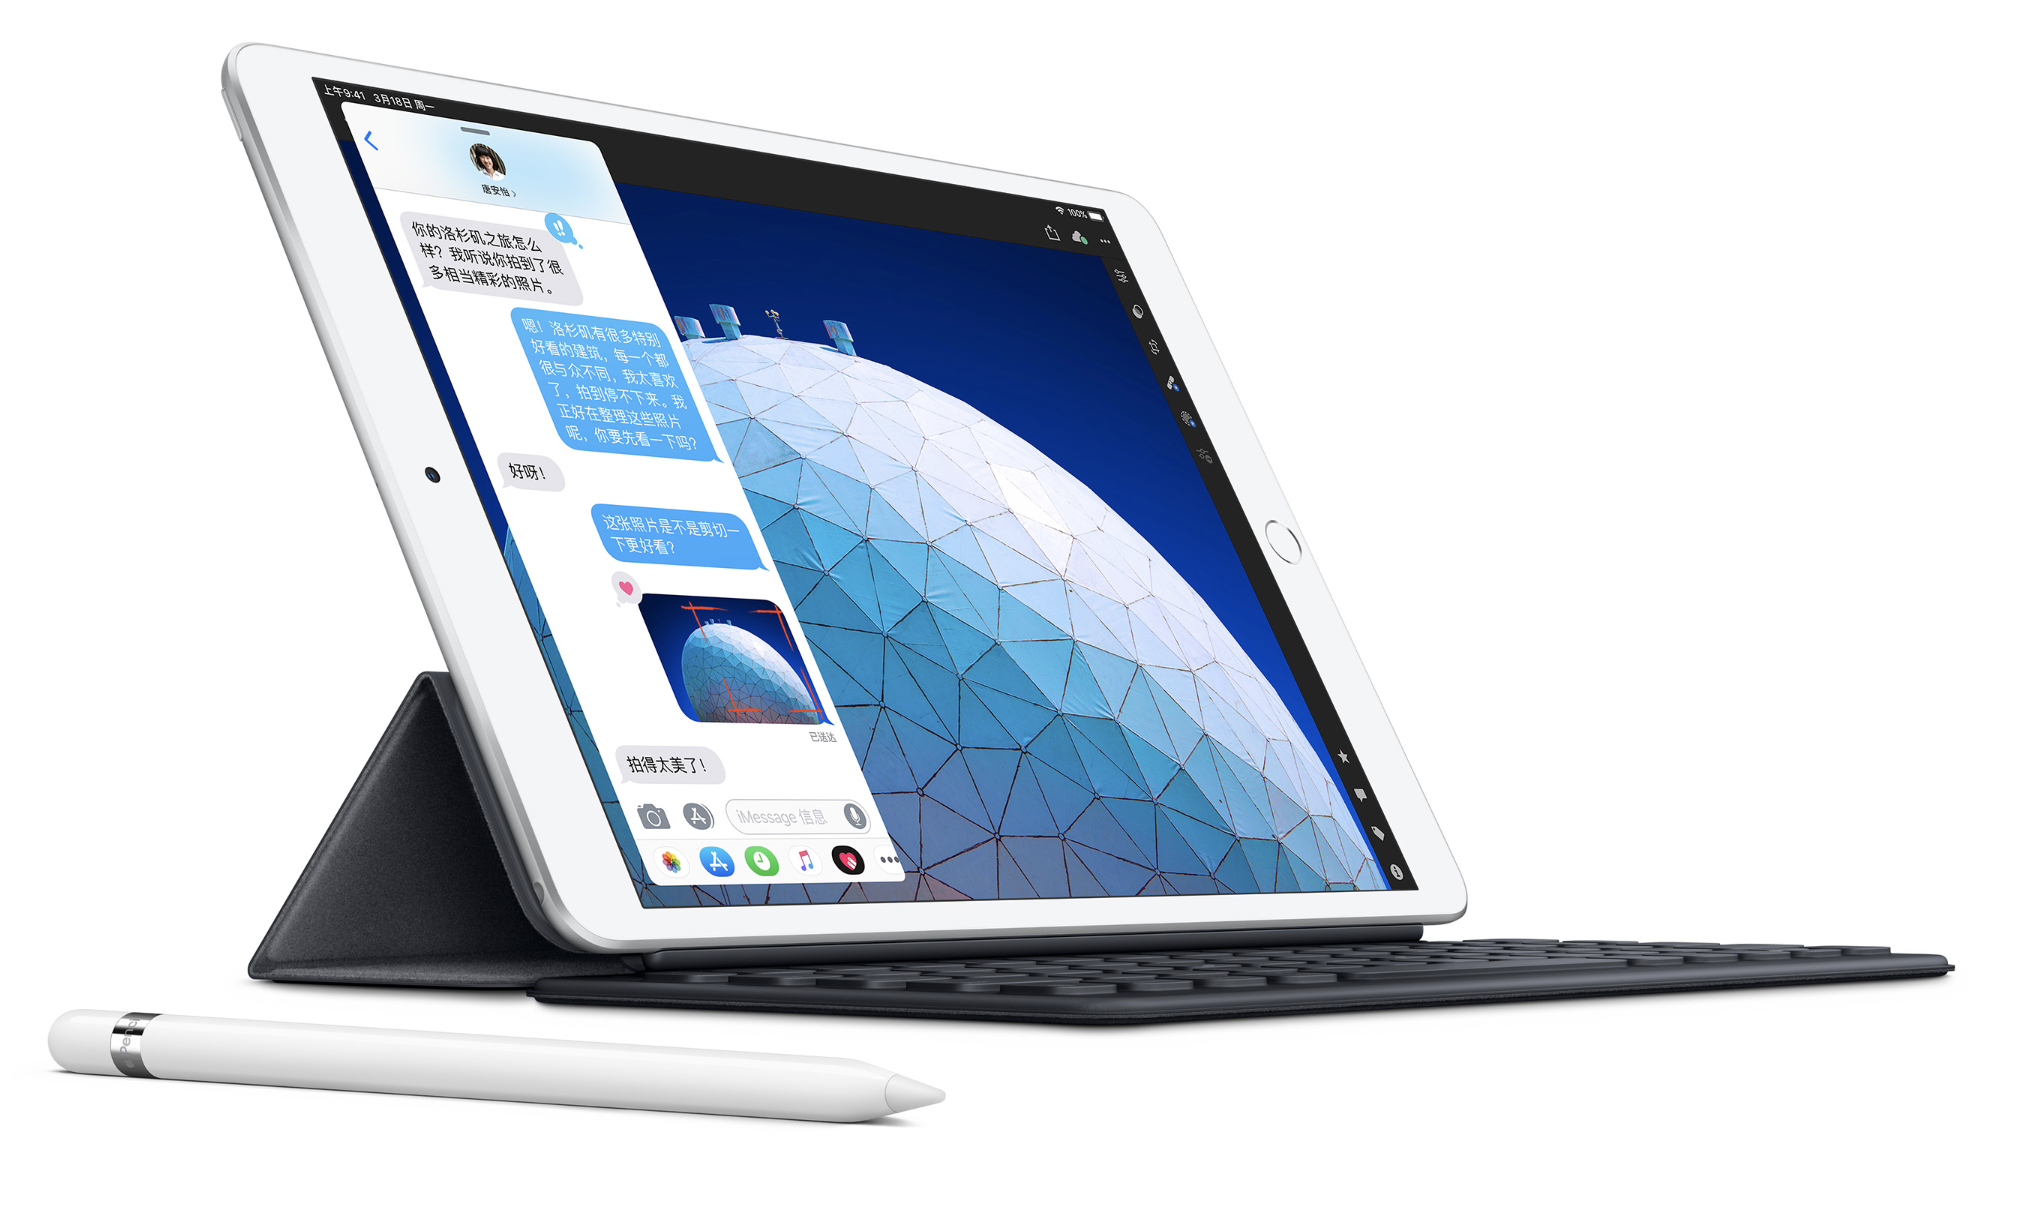 苹果正式发布全新一代 iPad Air 与 iPad mini